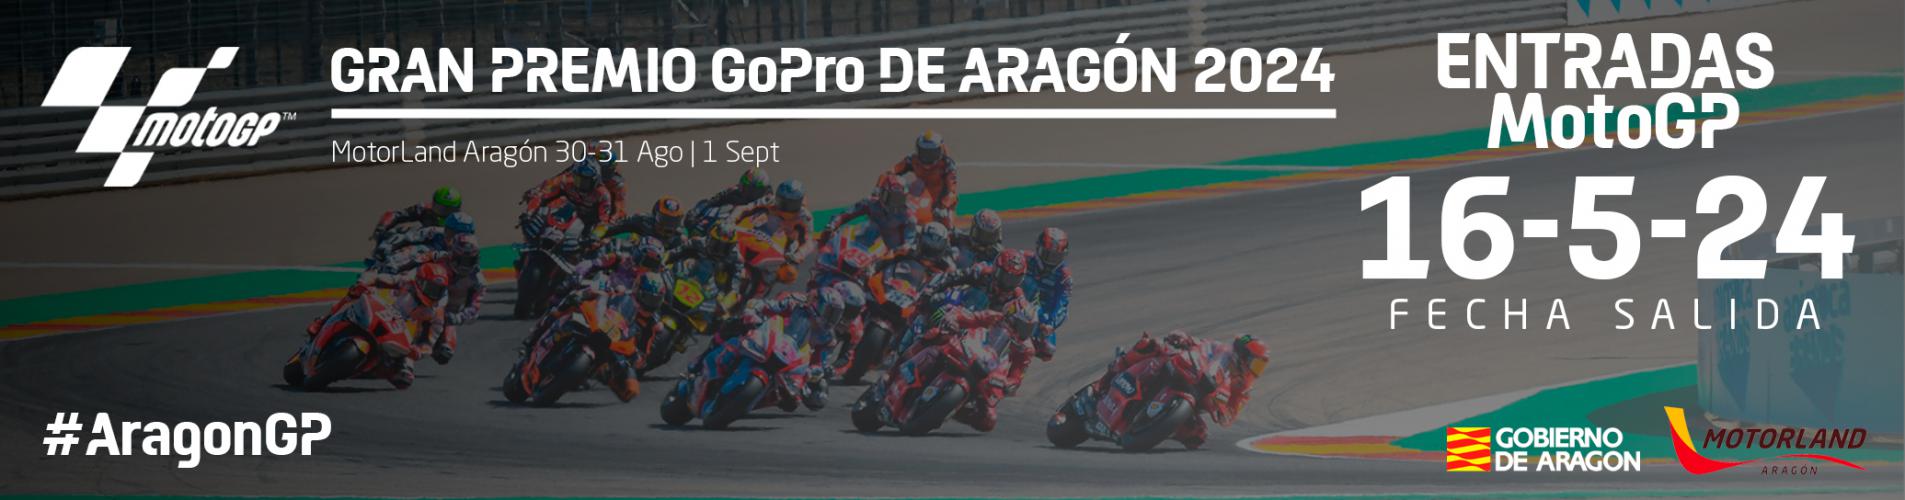 Venta de entradas para el Gran Premio GoPro de Aragón 2024